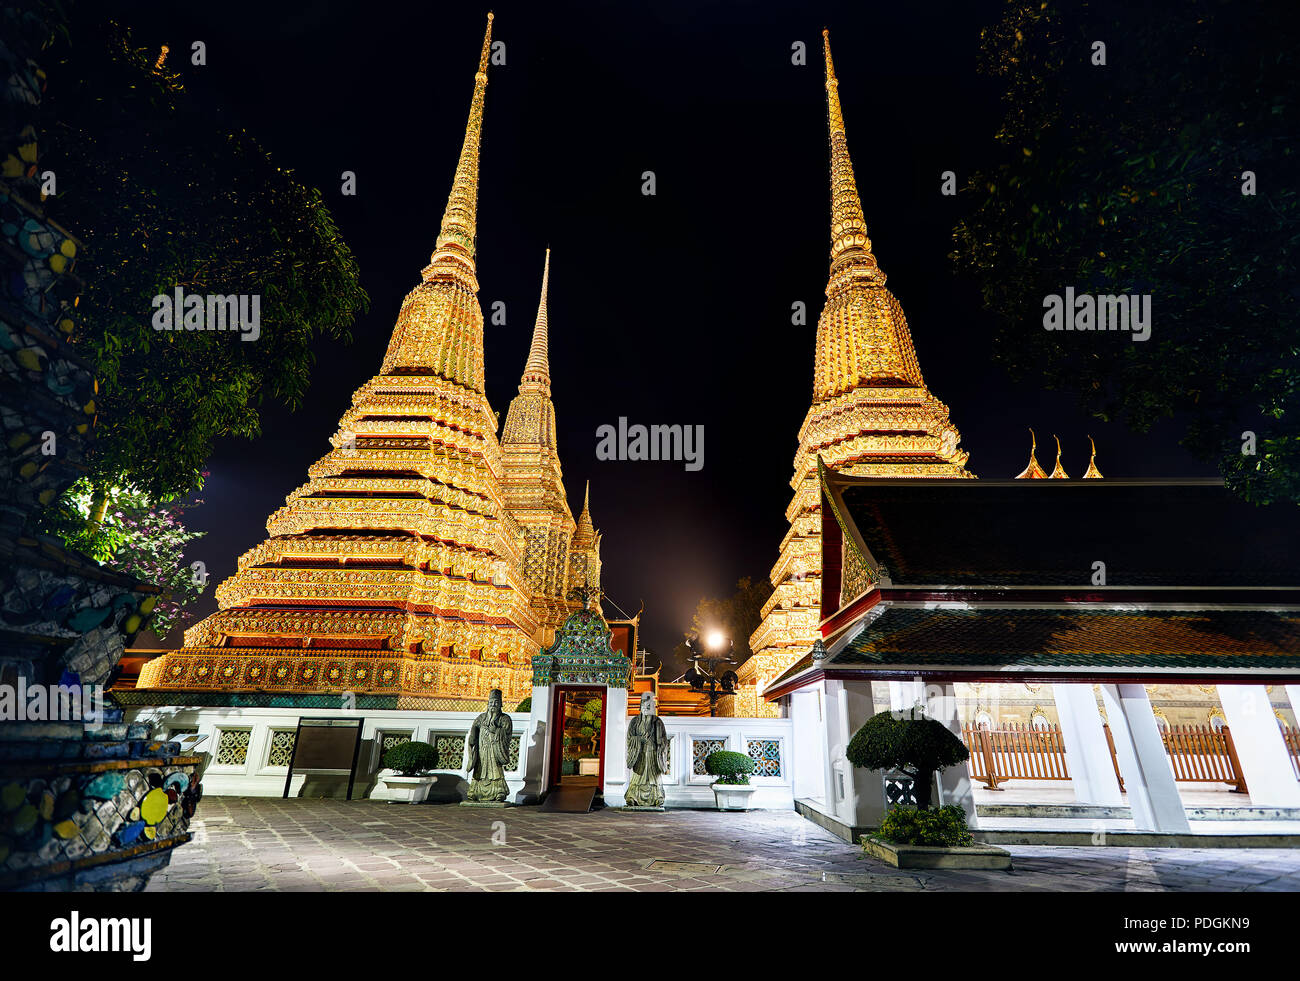 Temple Bouddhique Wat Pho à Bangkok avec golden Chedi au ciel de nuit en Thaïlande. Célèbre et de la vue de la ville. Banque D'Images